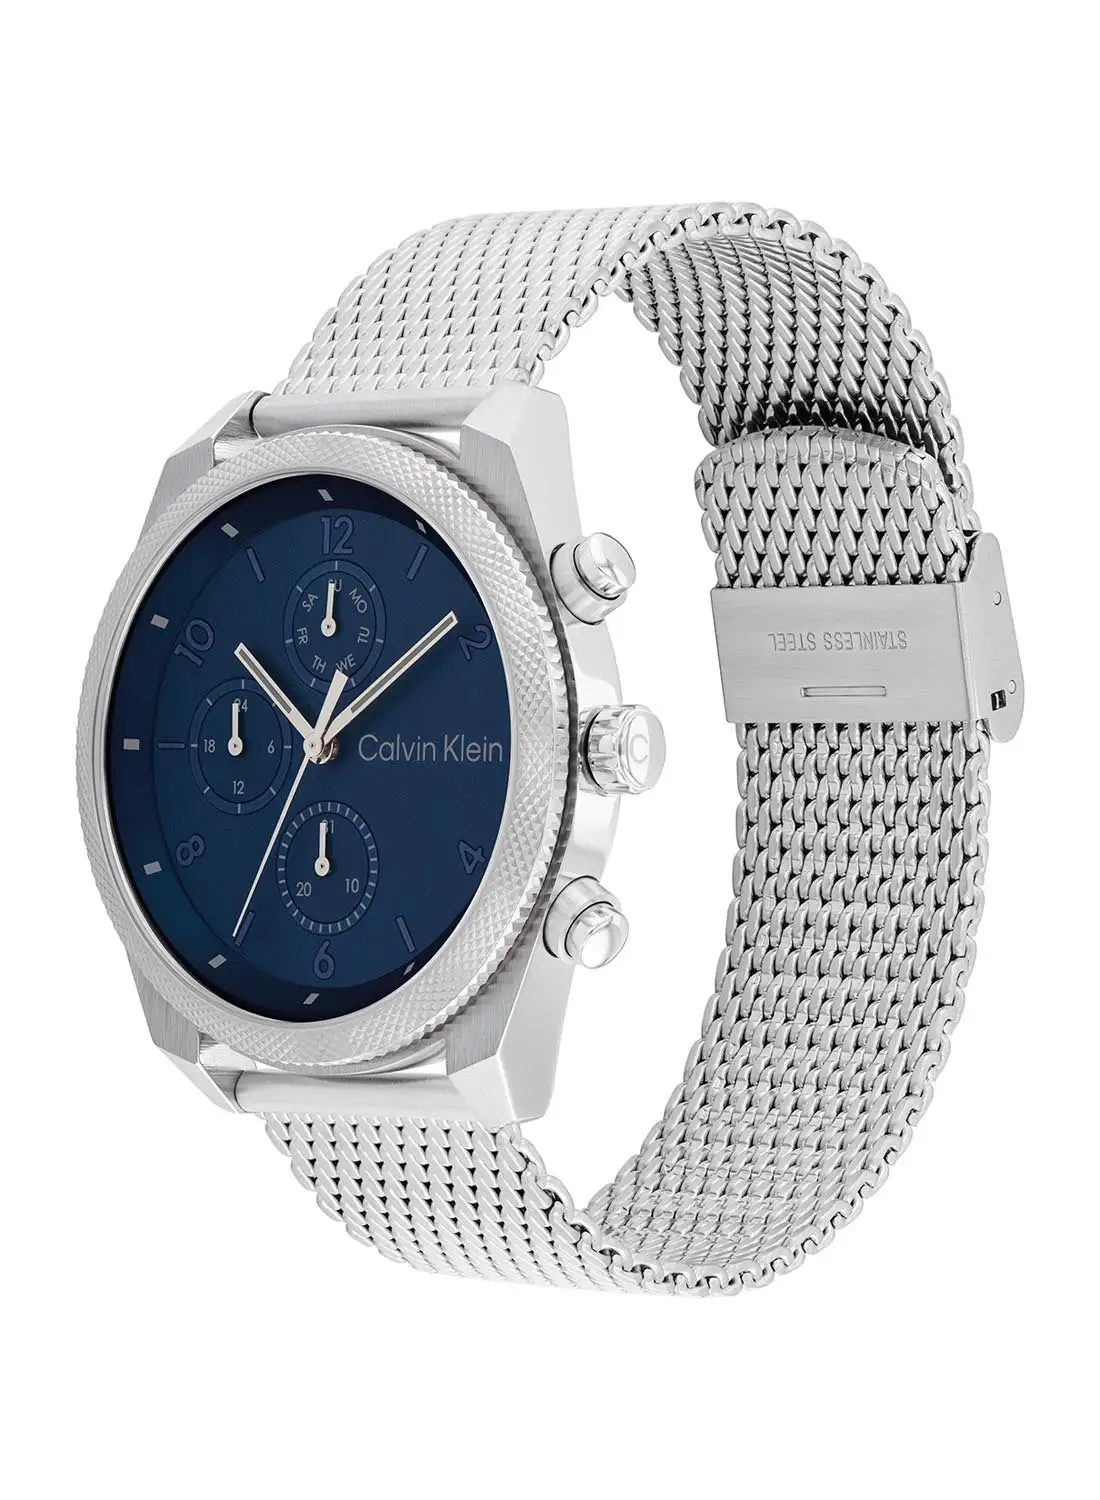 CALVIN KLEIN Men's Analog Round Shape Stainless Steel Wrist Watch 25200360 - 44 Mm